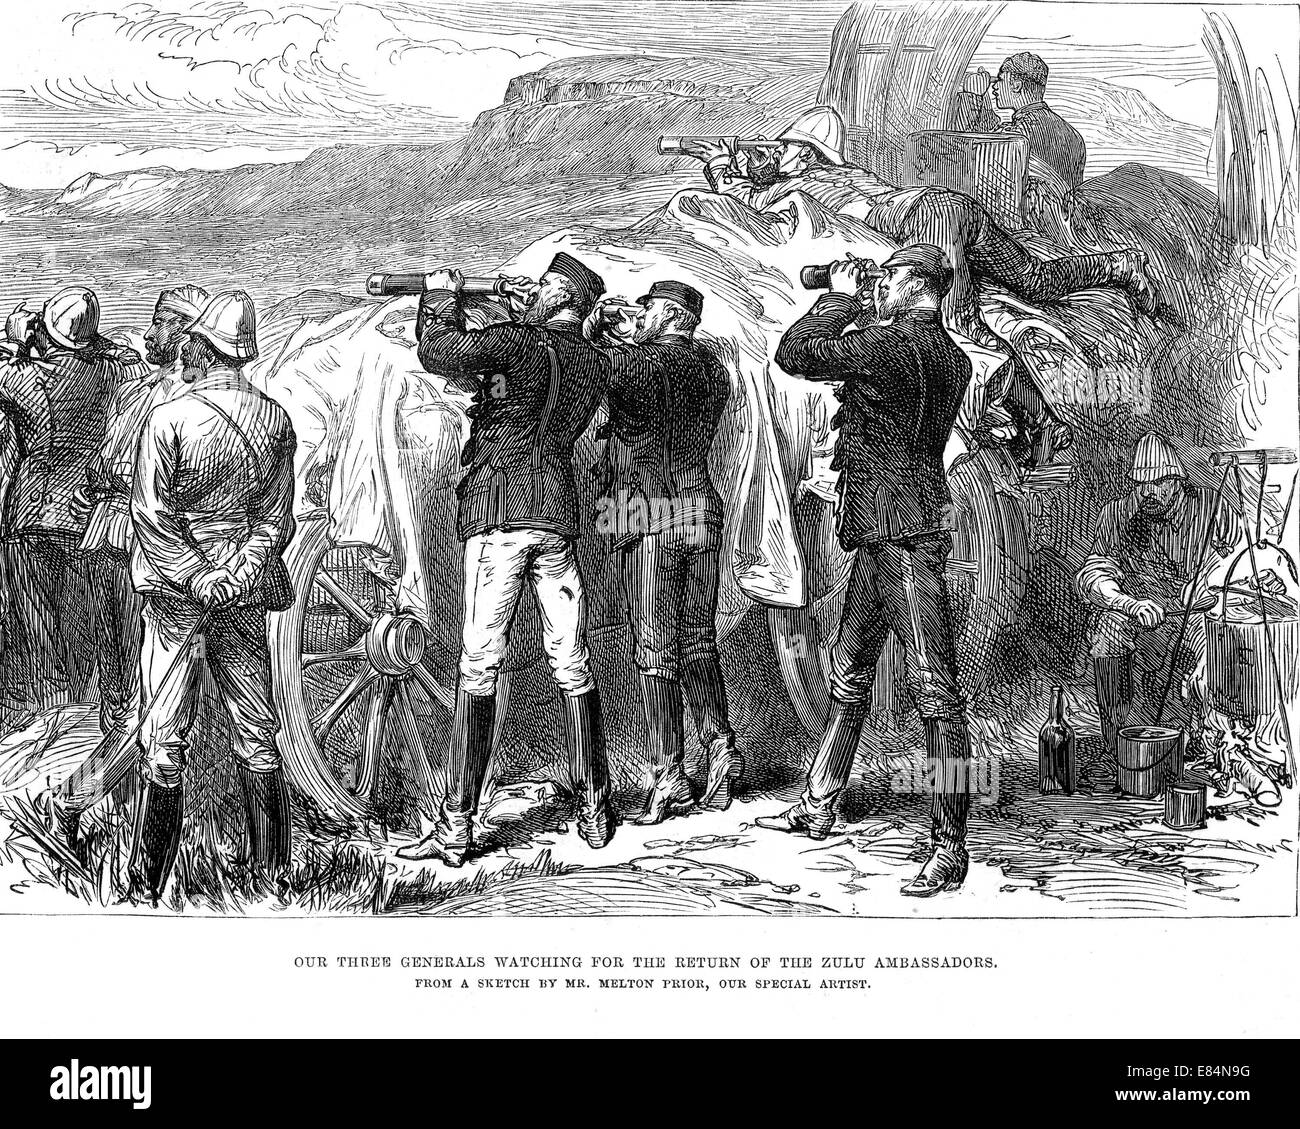 Guerra ZULU 1879 Signore Chelmsford a sinistra con telescopio attende il ritorno degli Zulu messaggeri a Cetshwayo - vedere la descrizione riportata di seguito Foto Stock